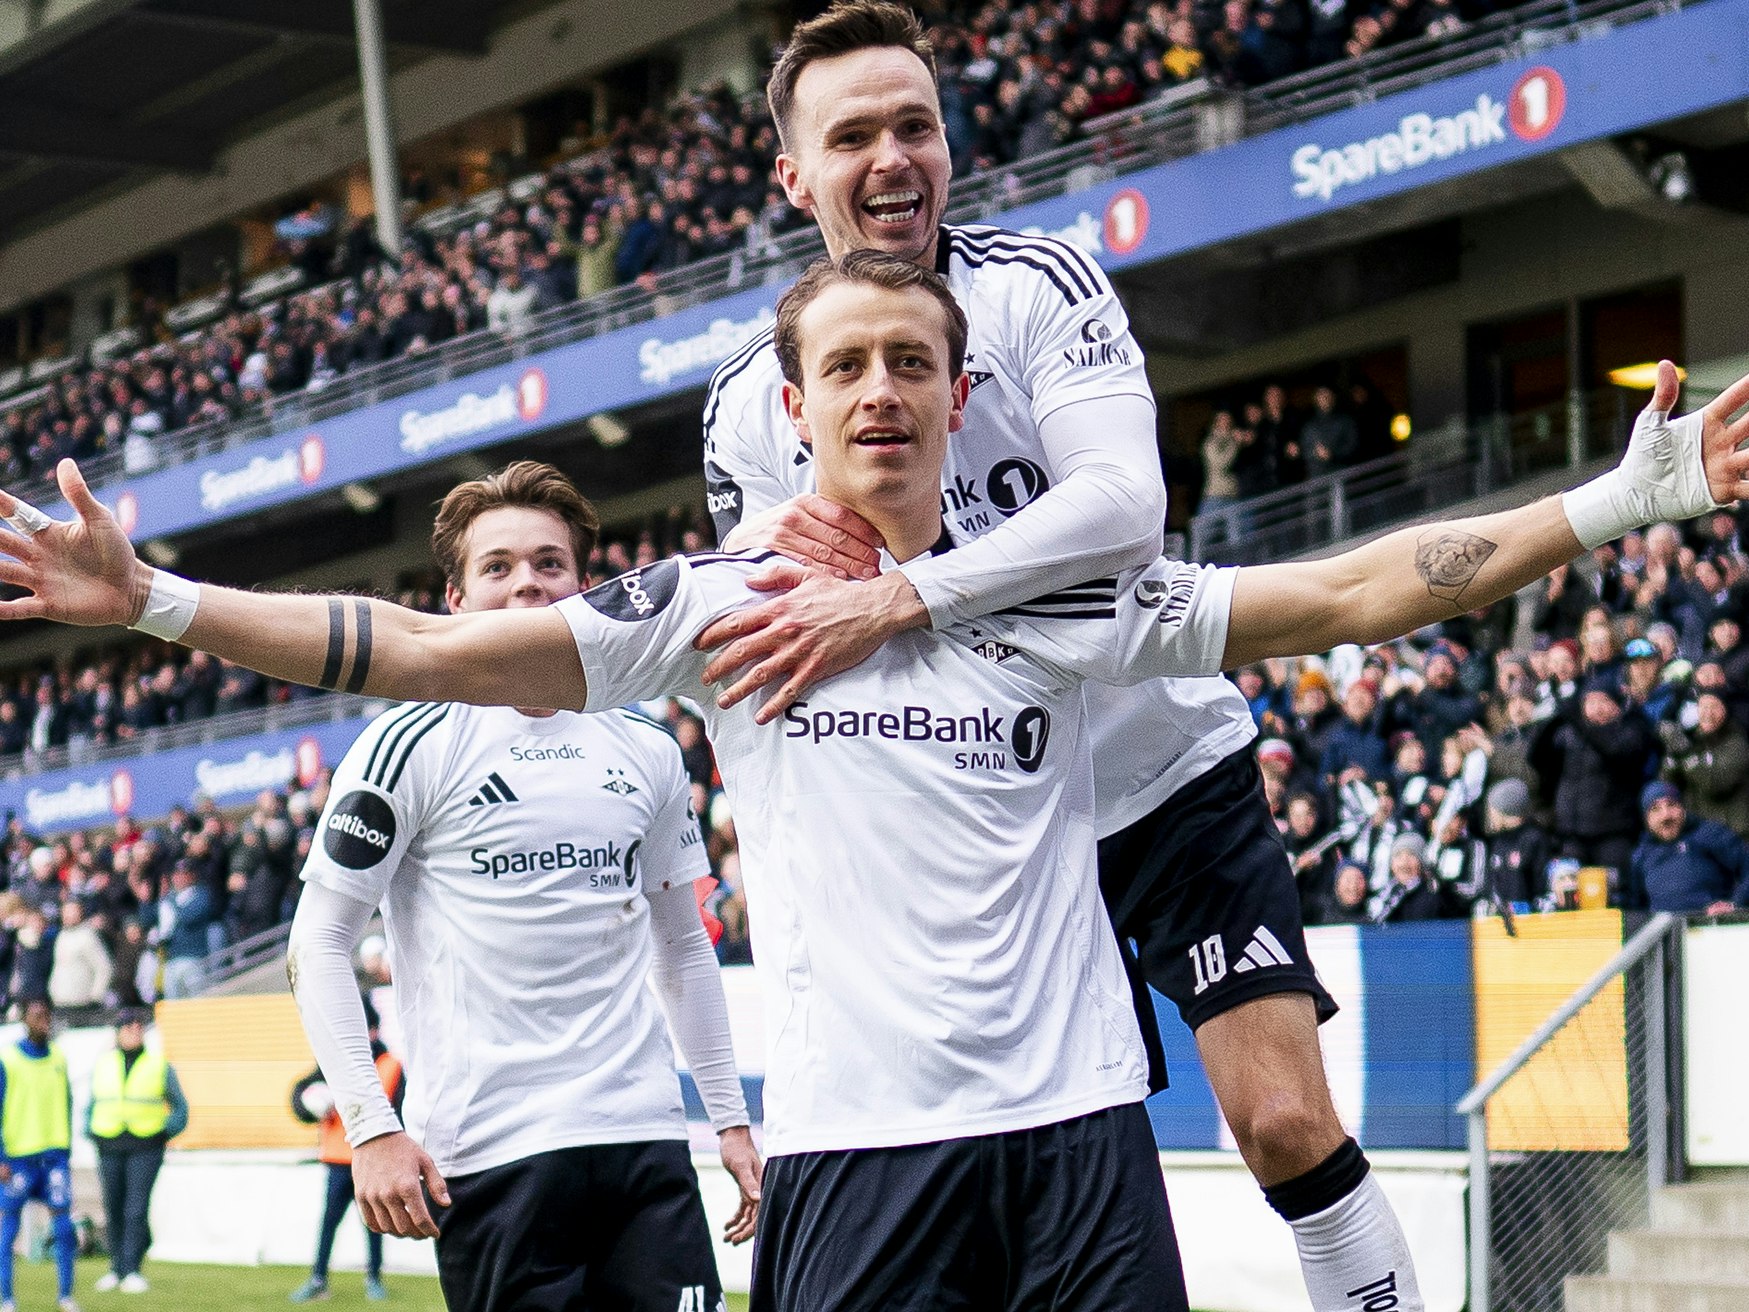 Bilde av Rosenborg-spillere som jubler etter scoring.